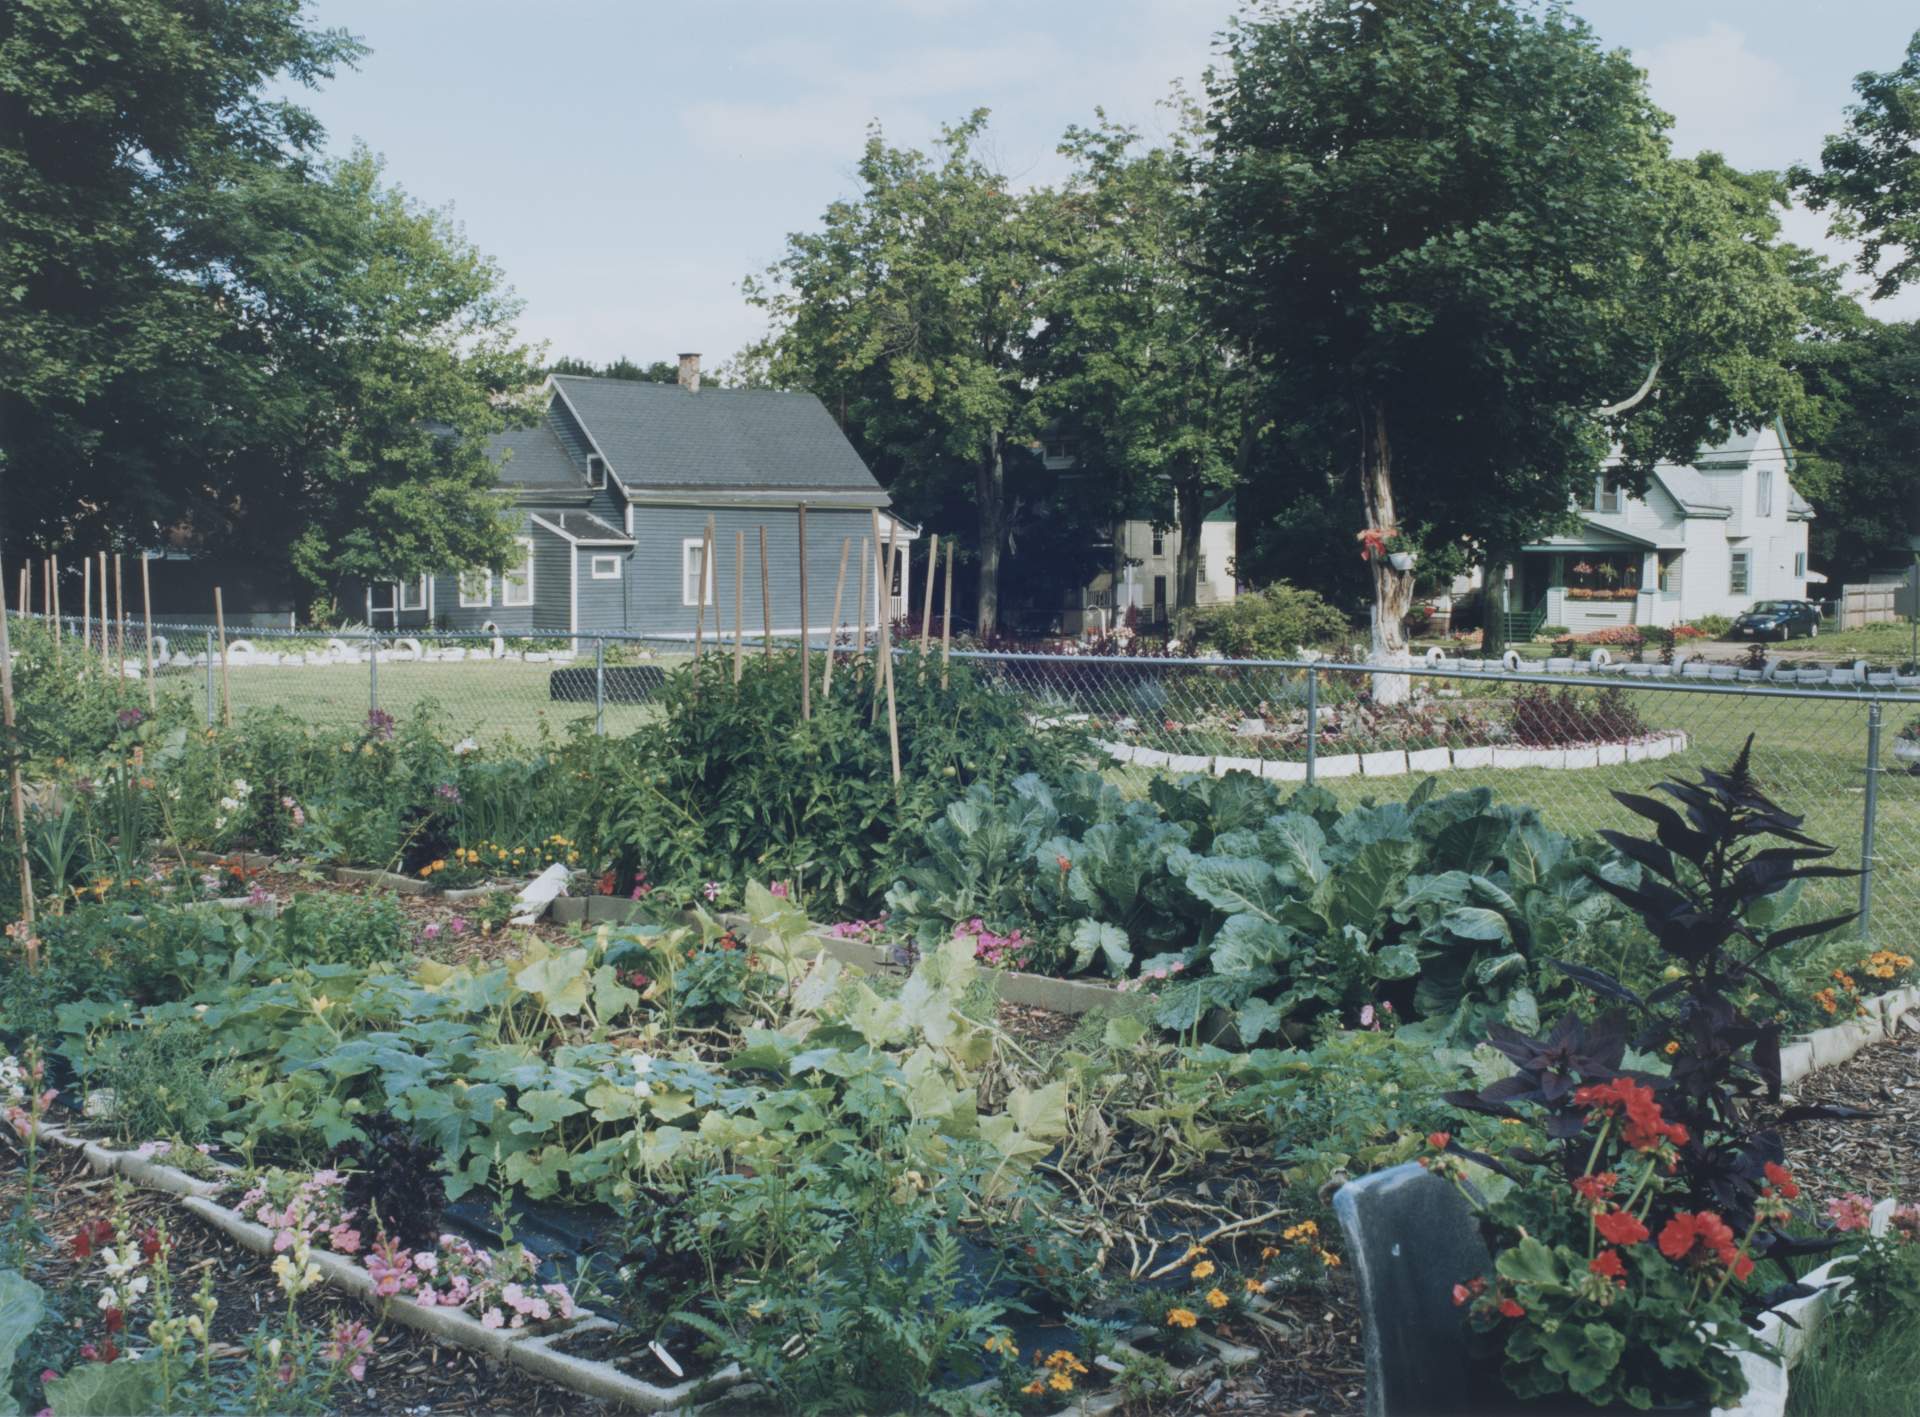 C. A. I. C. Community garden, Wohlers Ave & Northampton St, Buffalo NY